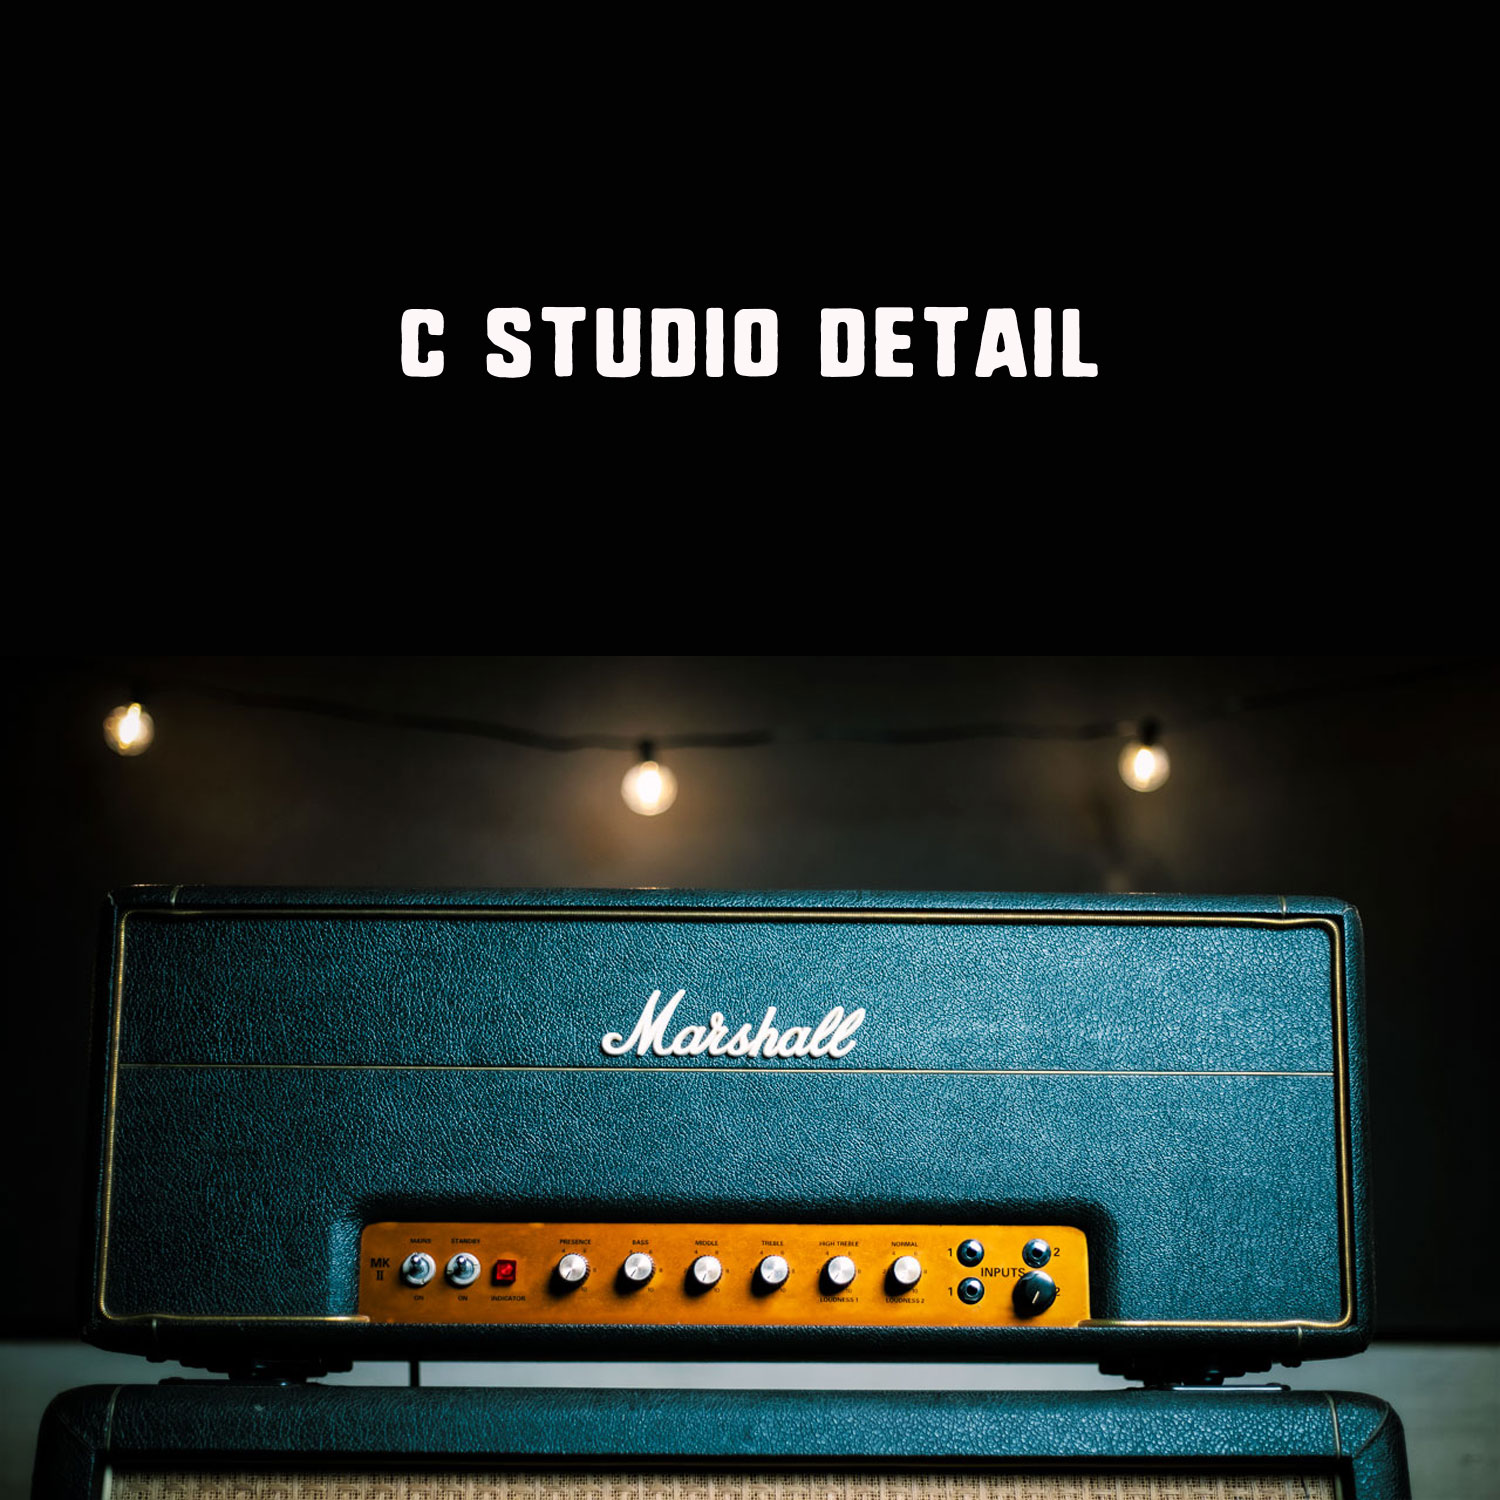 Cスタジオの機材を映像と写真で紹介。